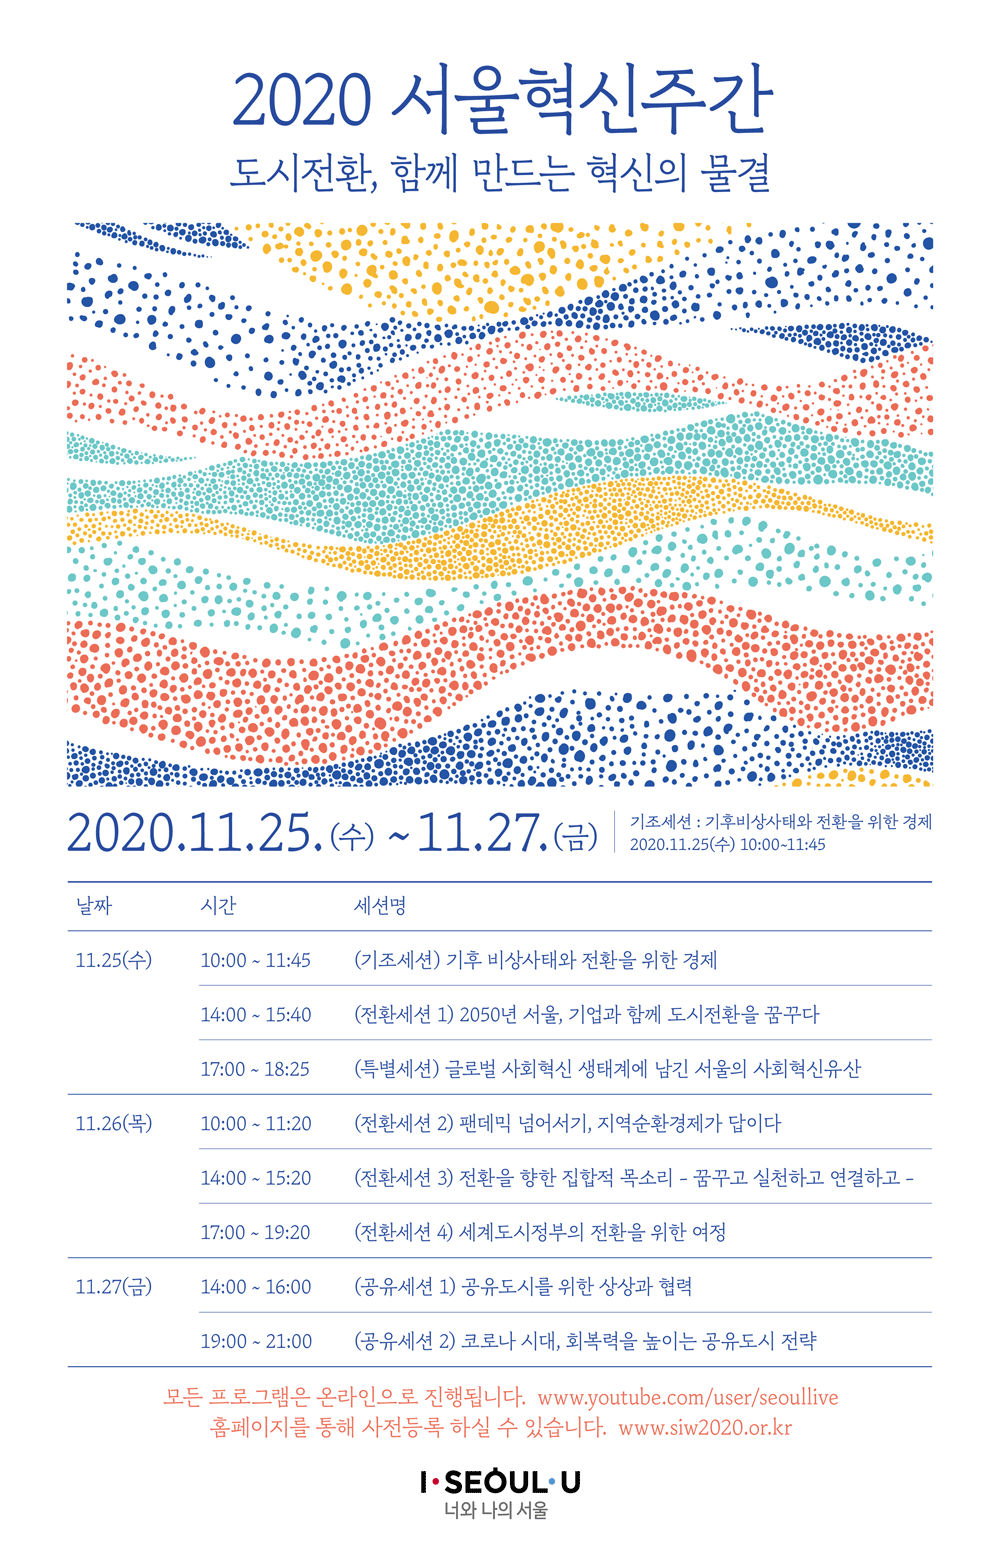 서울특별시, ‘2020 서울혁신주간’ 개최(11/25~27)